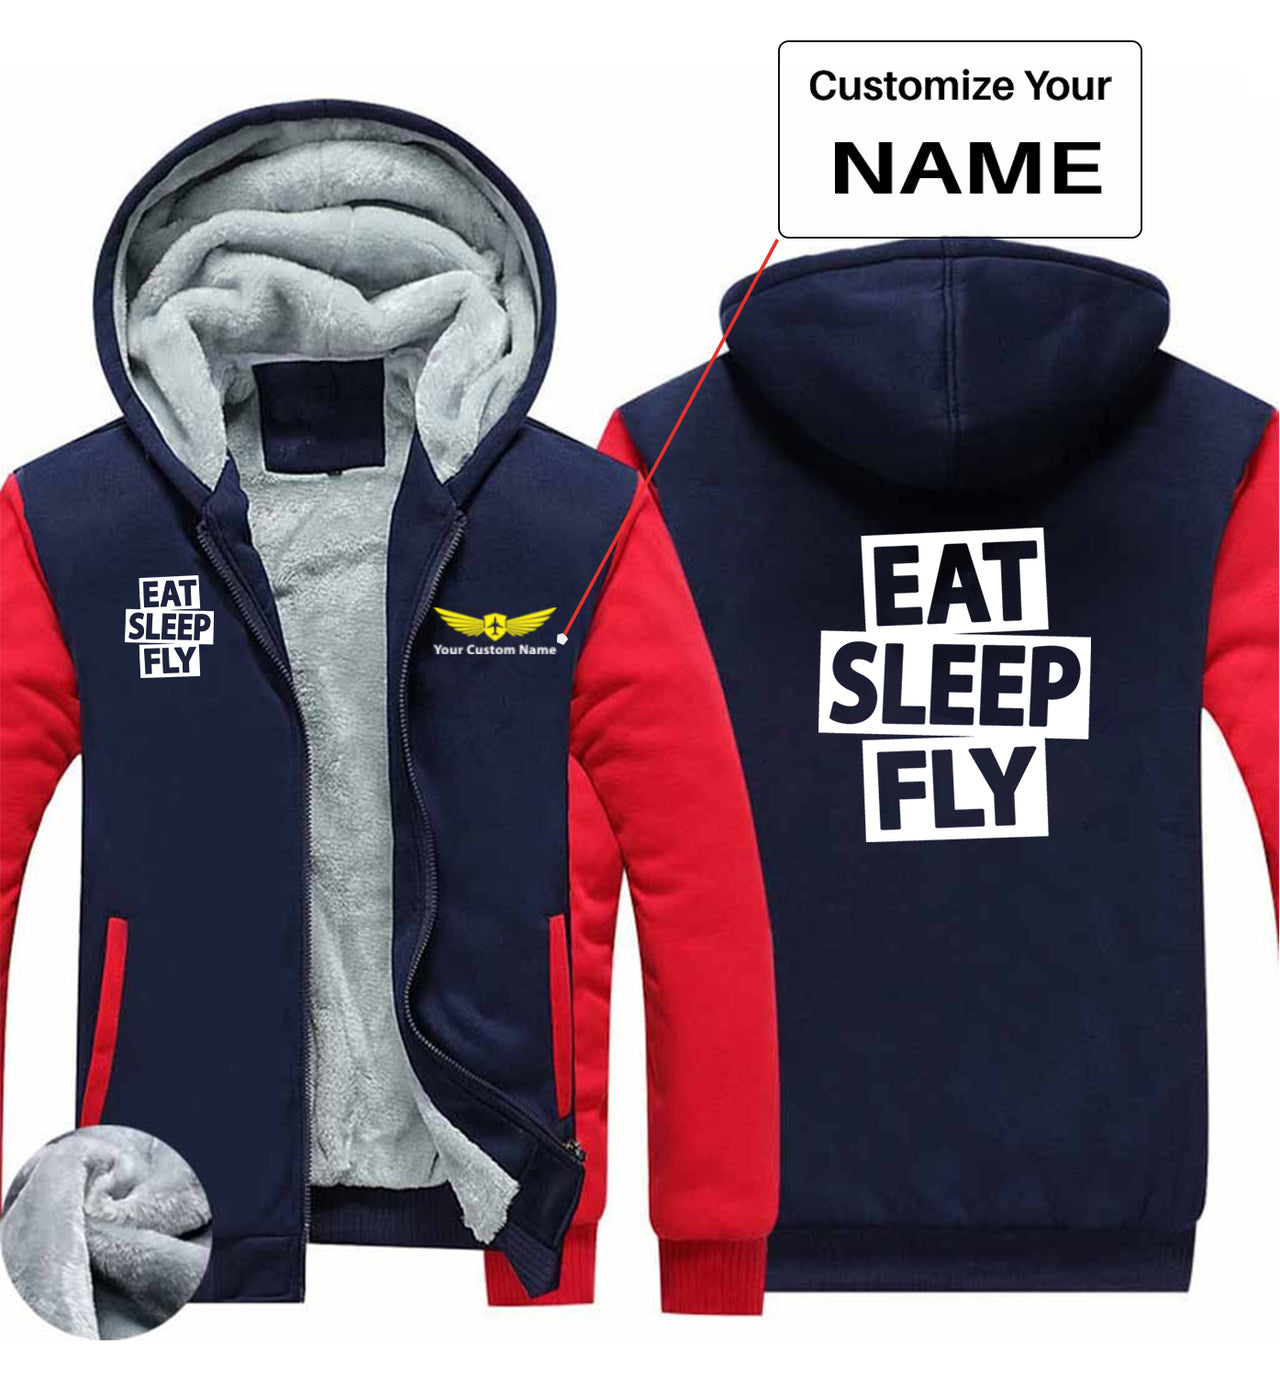 Eat Sleep Fly Designed Zipped Sweatshirts